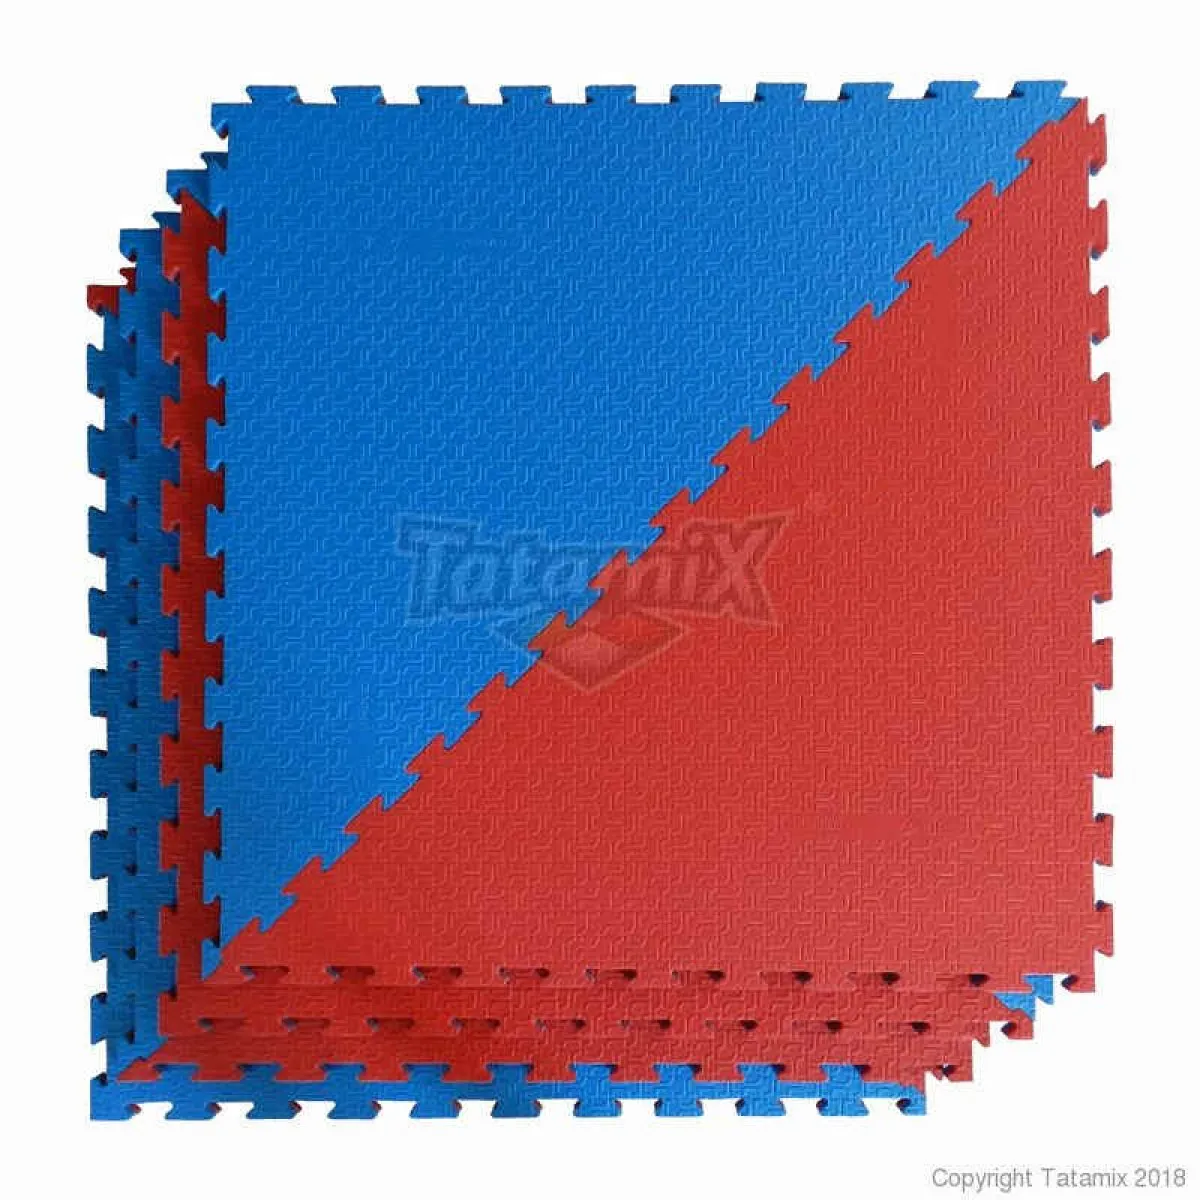 Taekwondo mat octágono rojo/azul